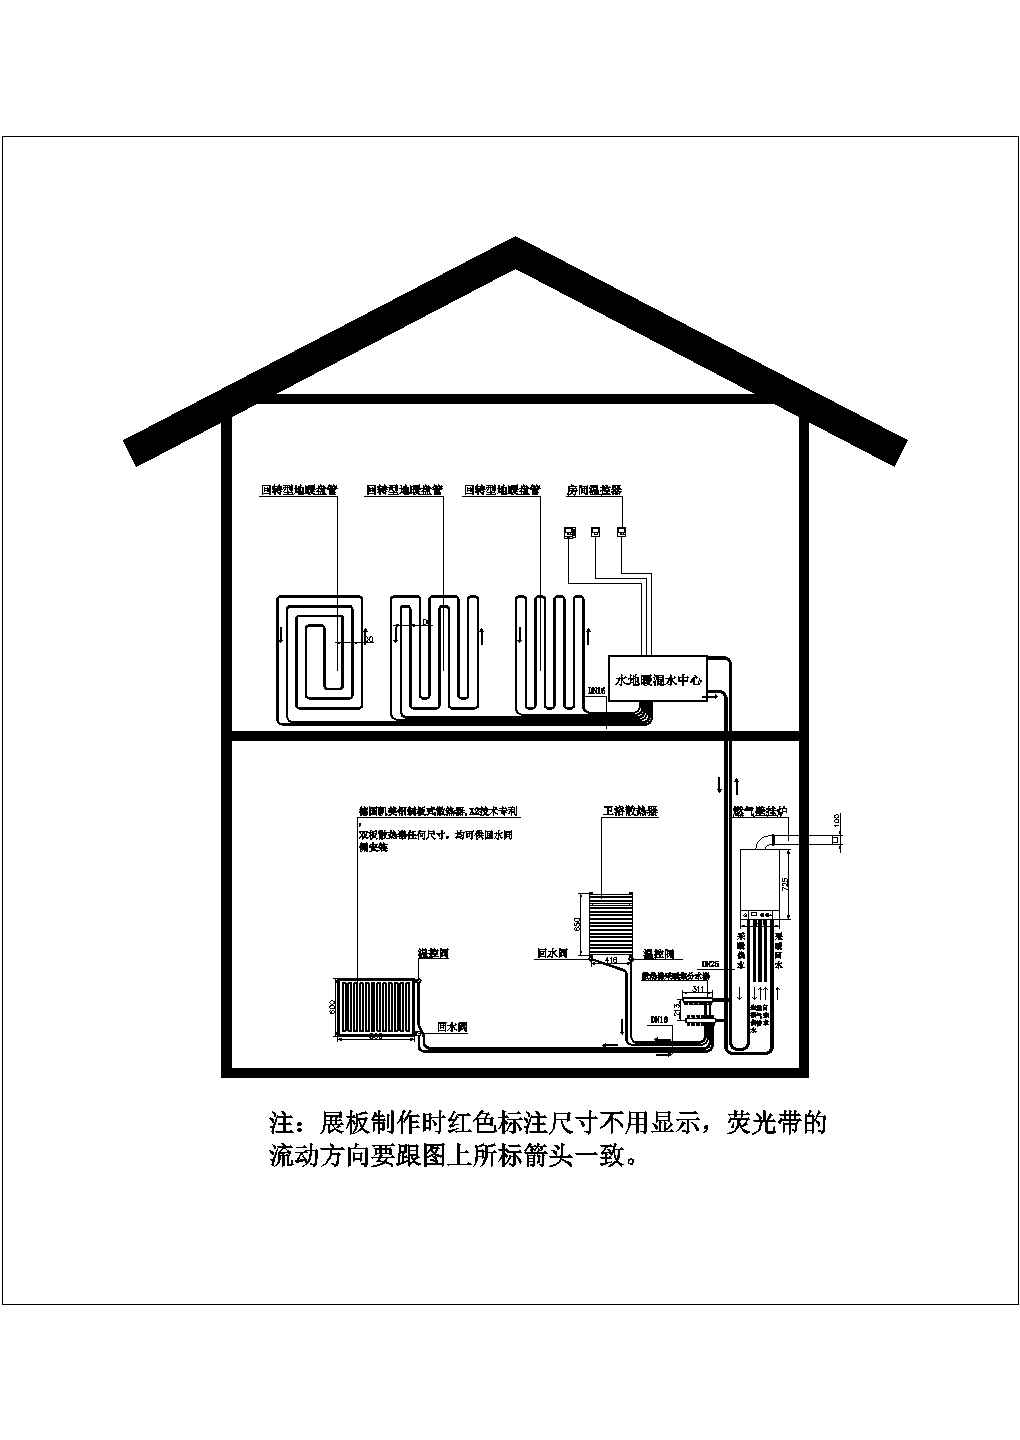 某二层别墅多联机空调加燃气壁挂炉采暖（地暖+散热器采暖）模型图